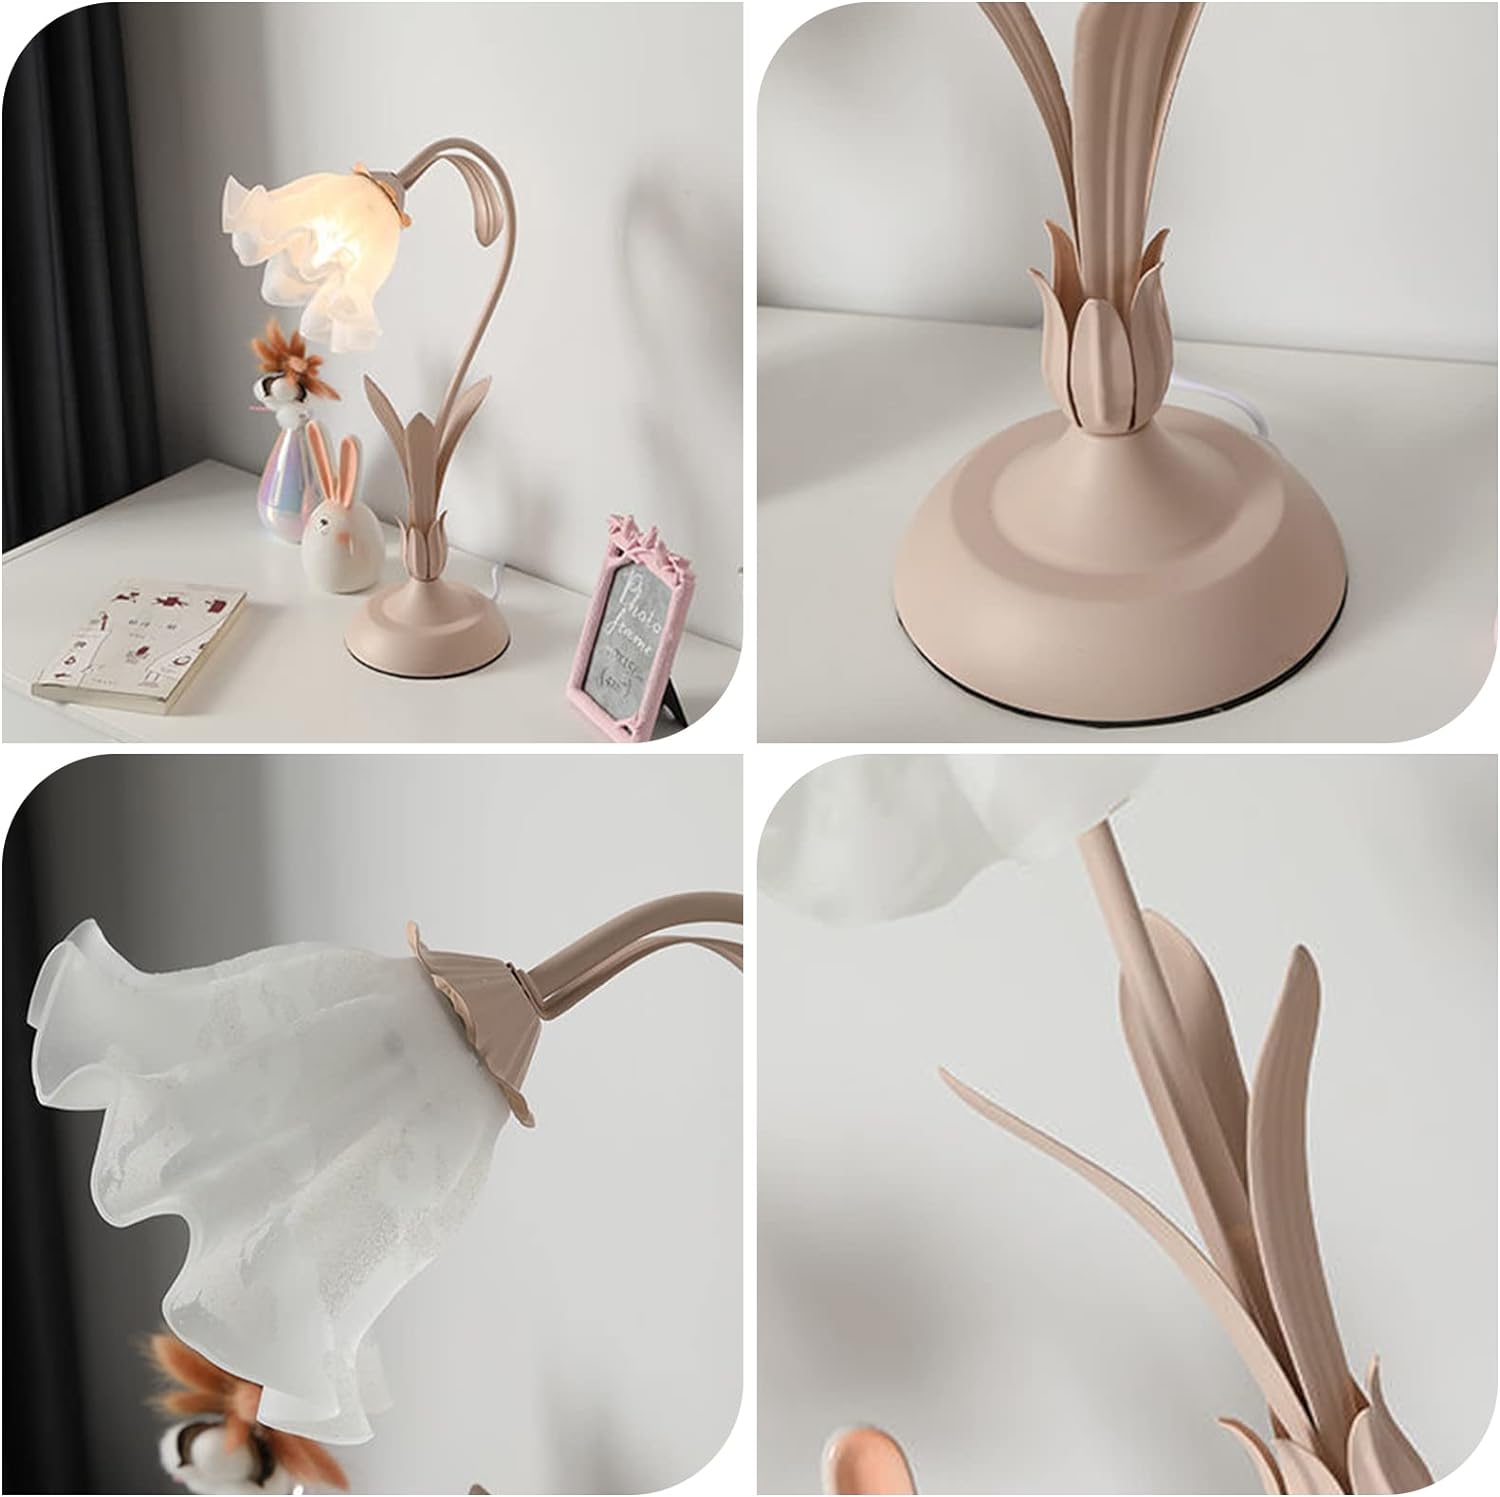 PINKBLOOM Modern Rose Flower Desk Lamp